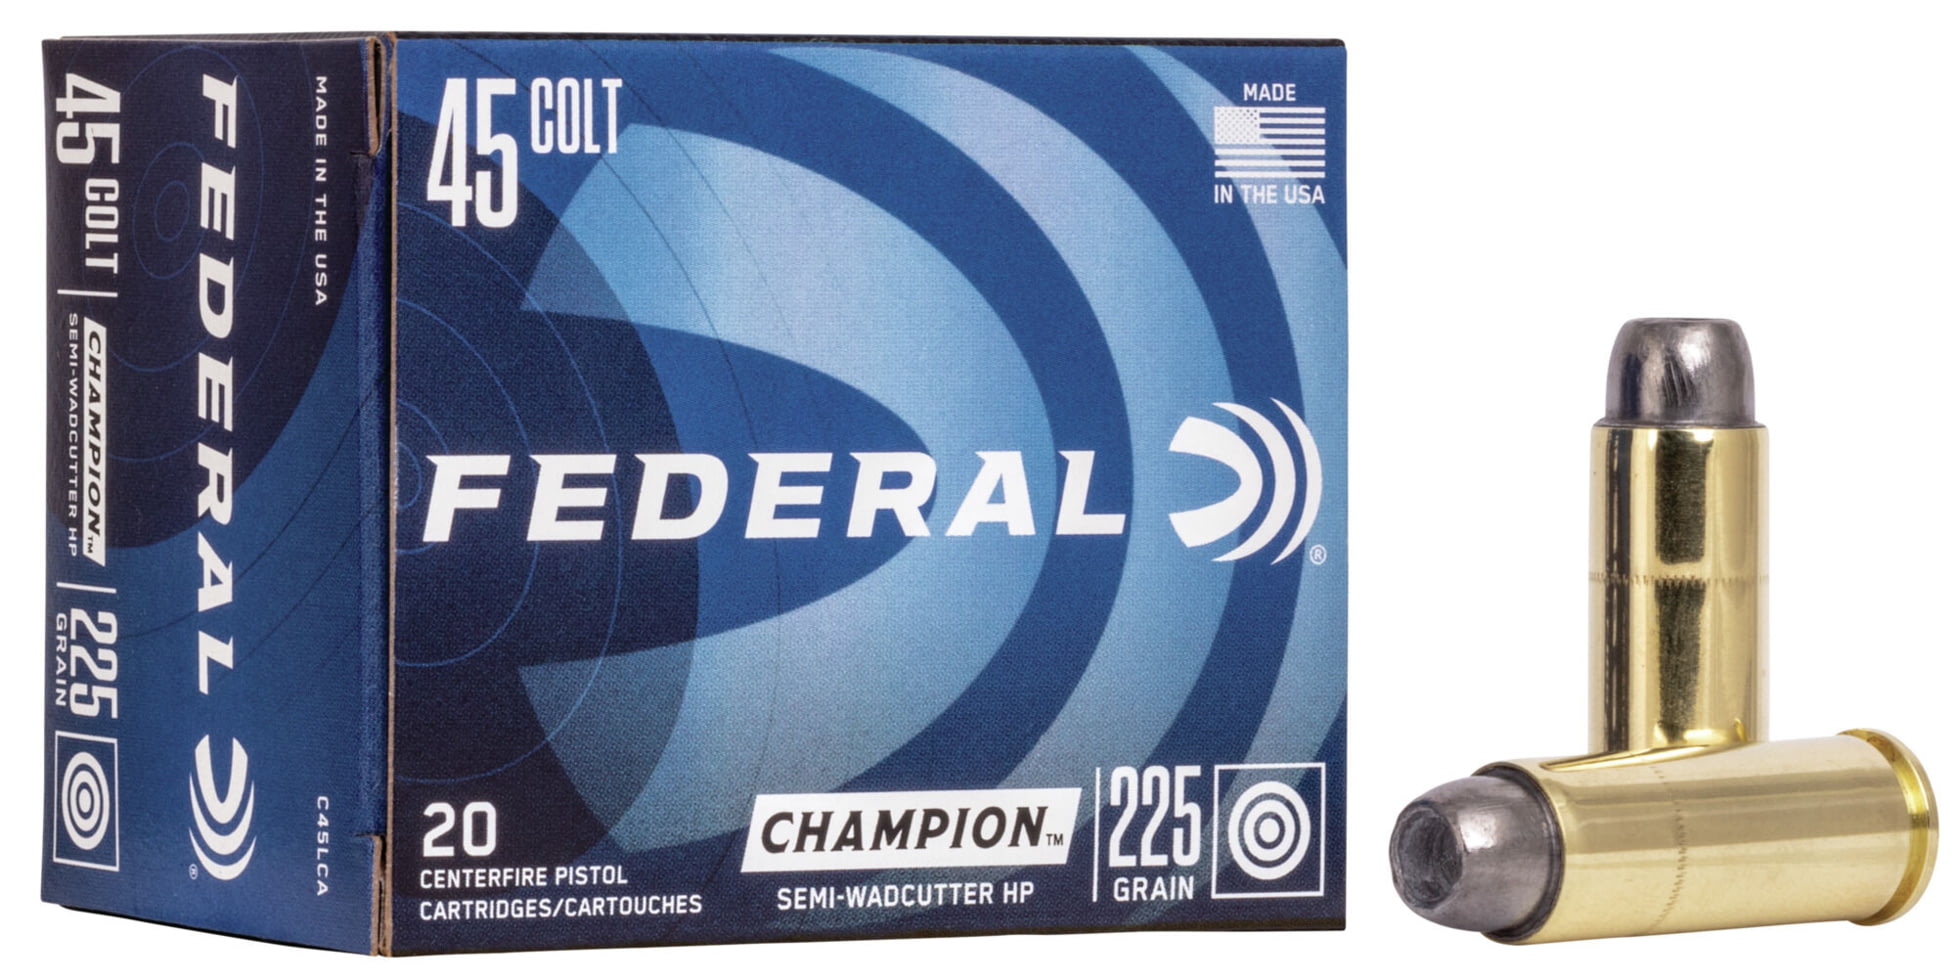 Federal Premium Centerfire Handgun Ammunition .45 Colt 225 grain Semi-Wadcutter Hollow Point Centerfire Pistol Ammunition